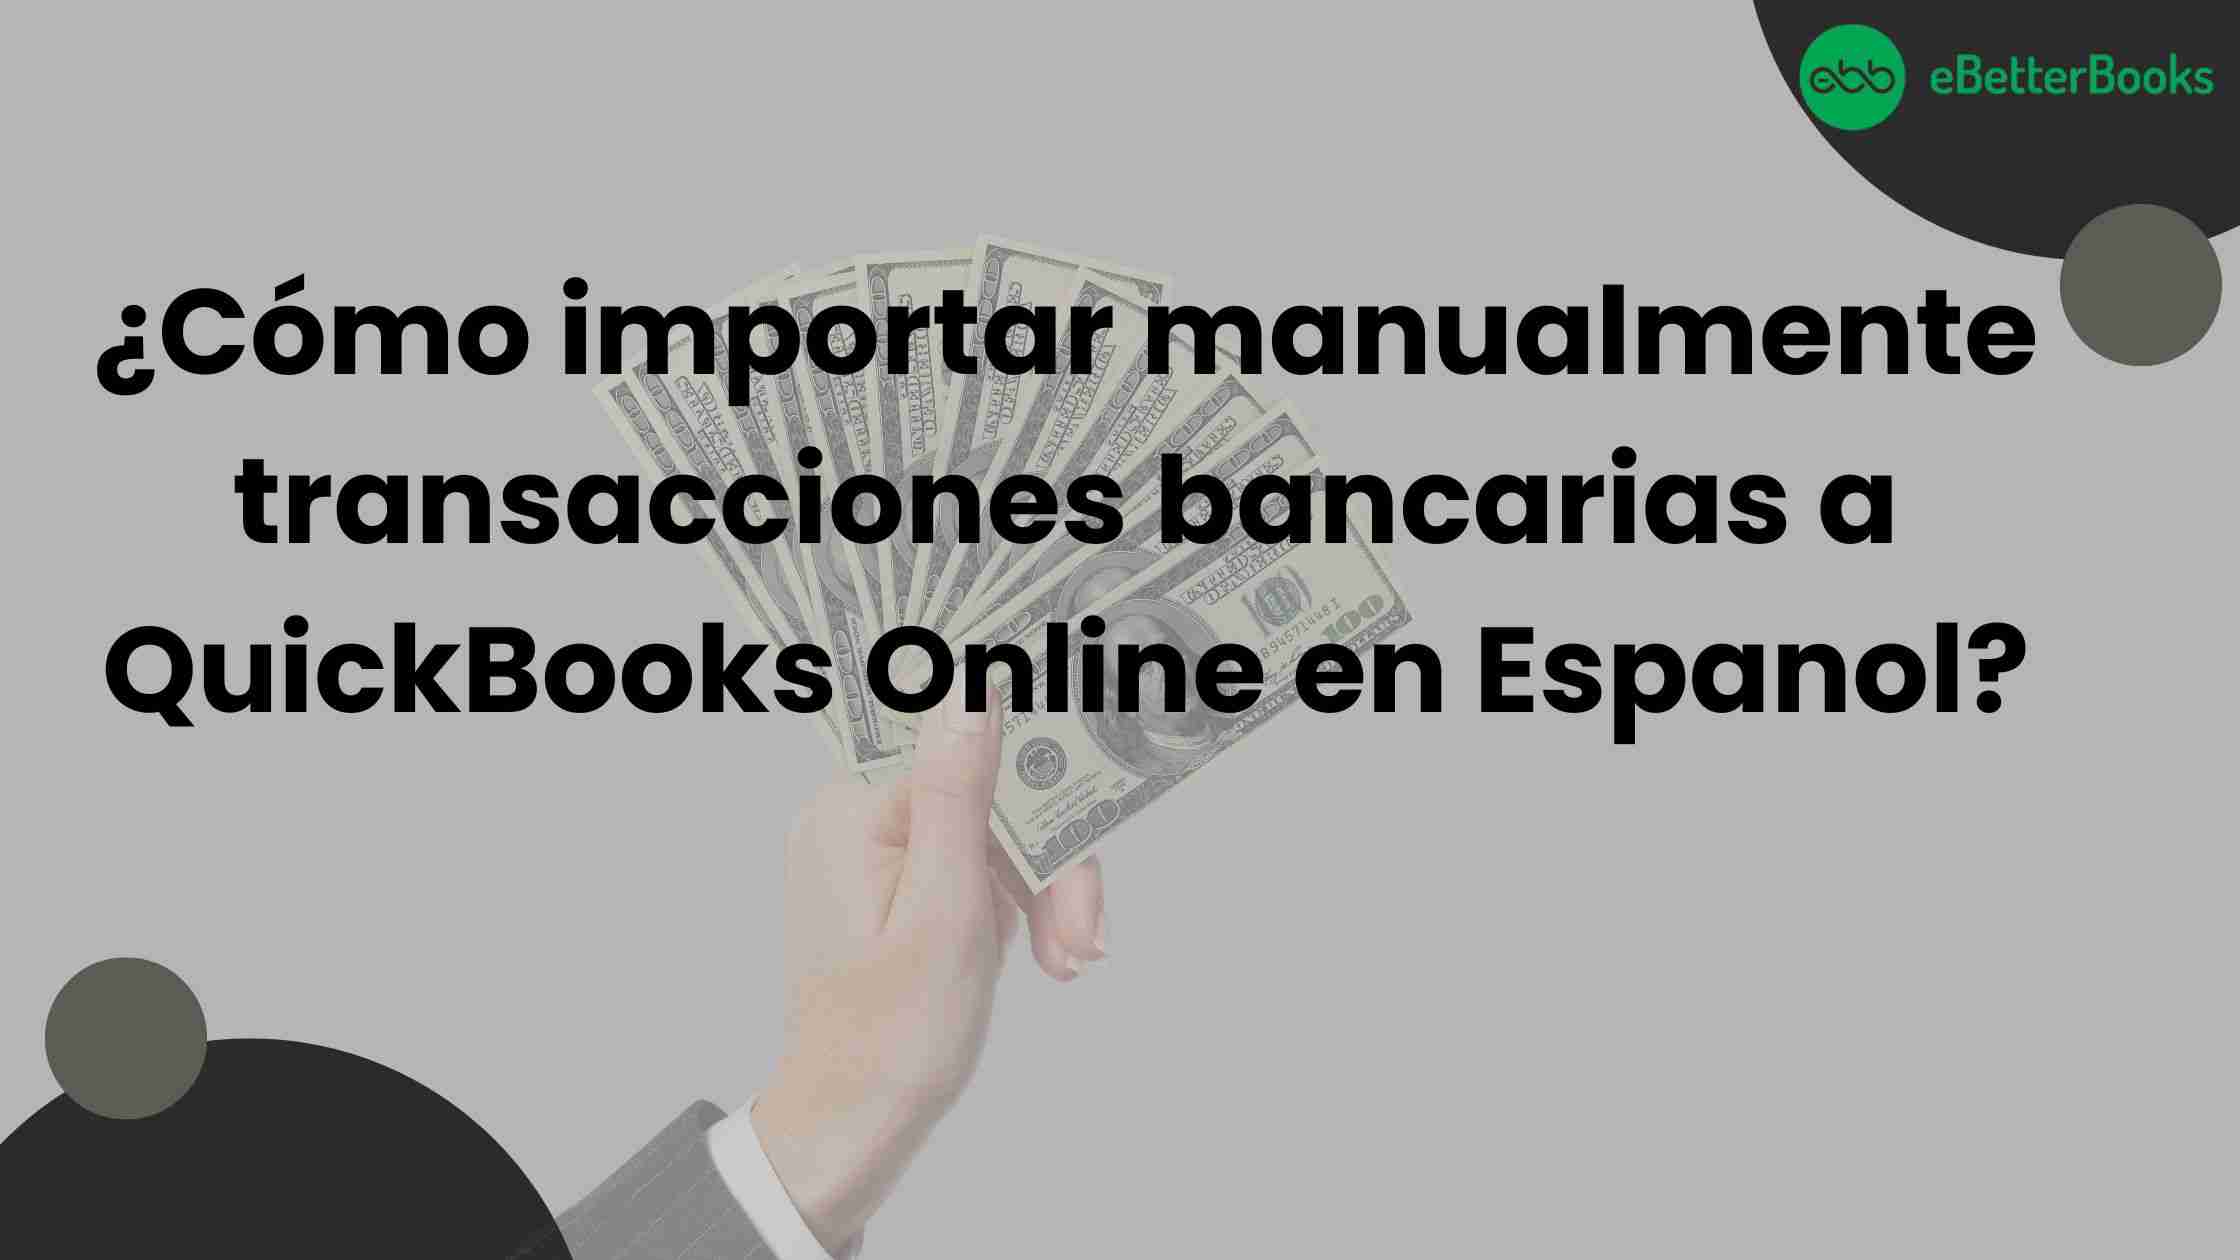 ¿Cómo importar manualmente transacciones bancarias a QuickBooks Online en Espanol?